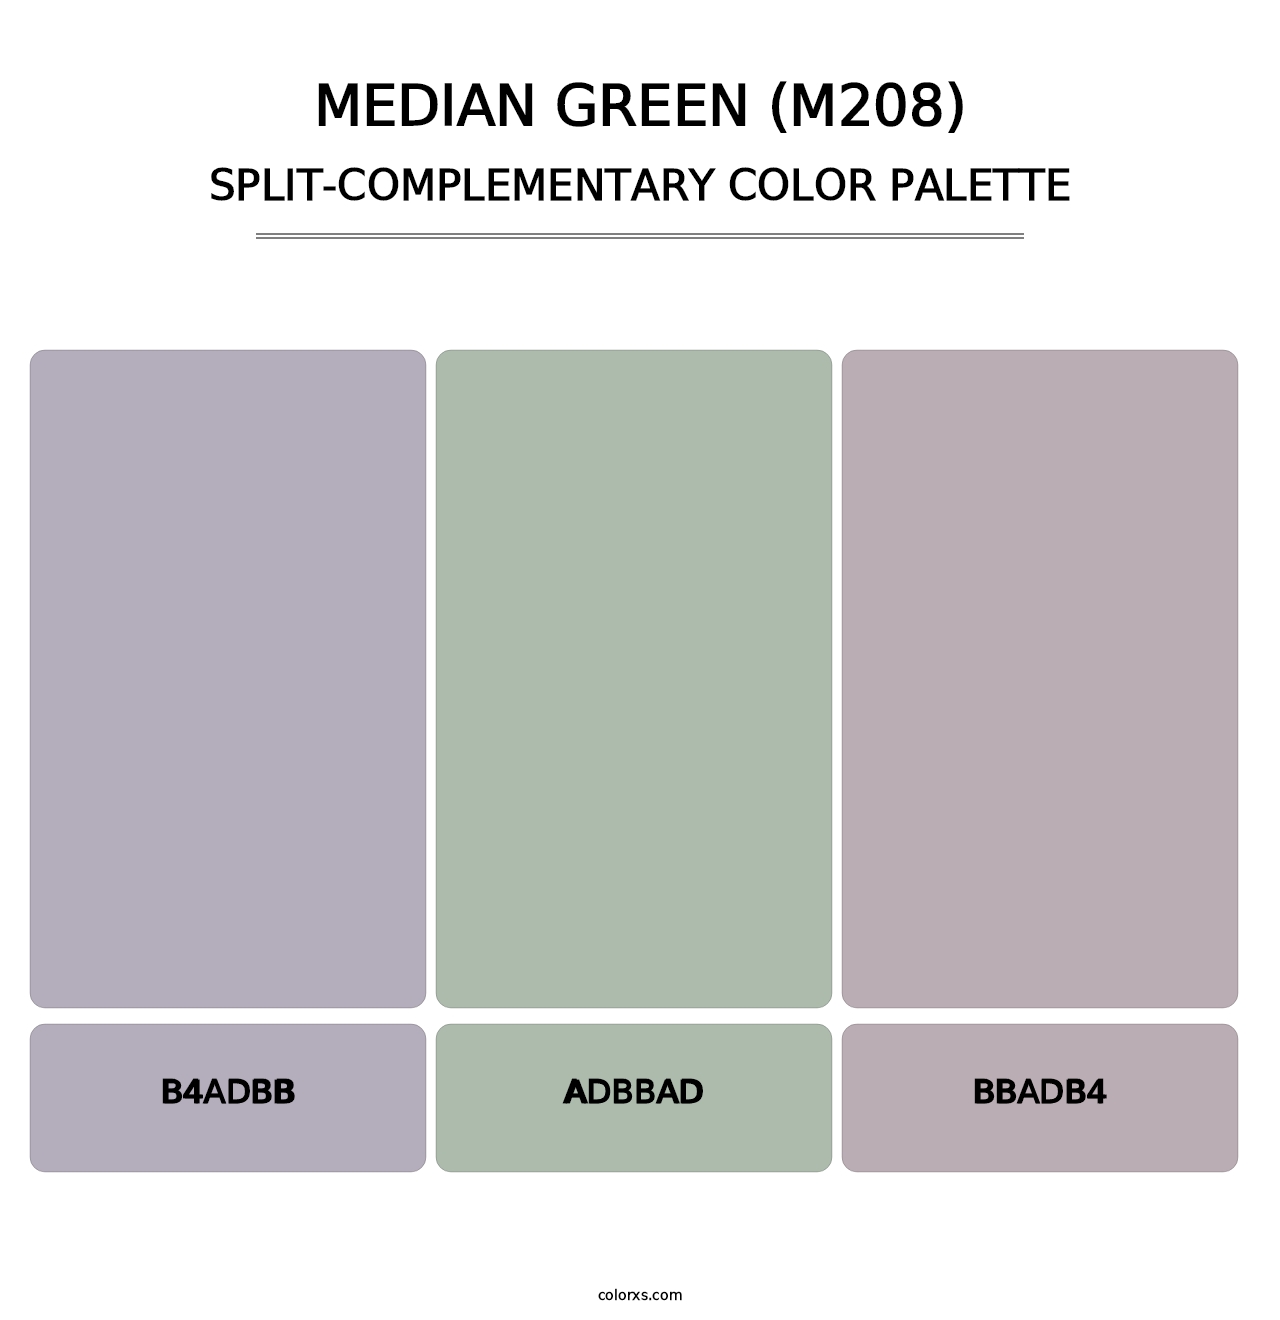 Median Green (M208) - Split-Complementary Color Palette